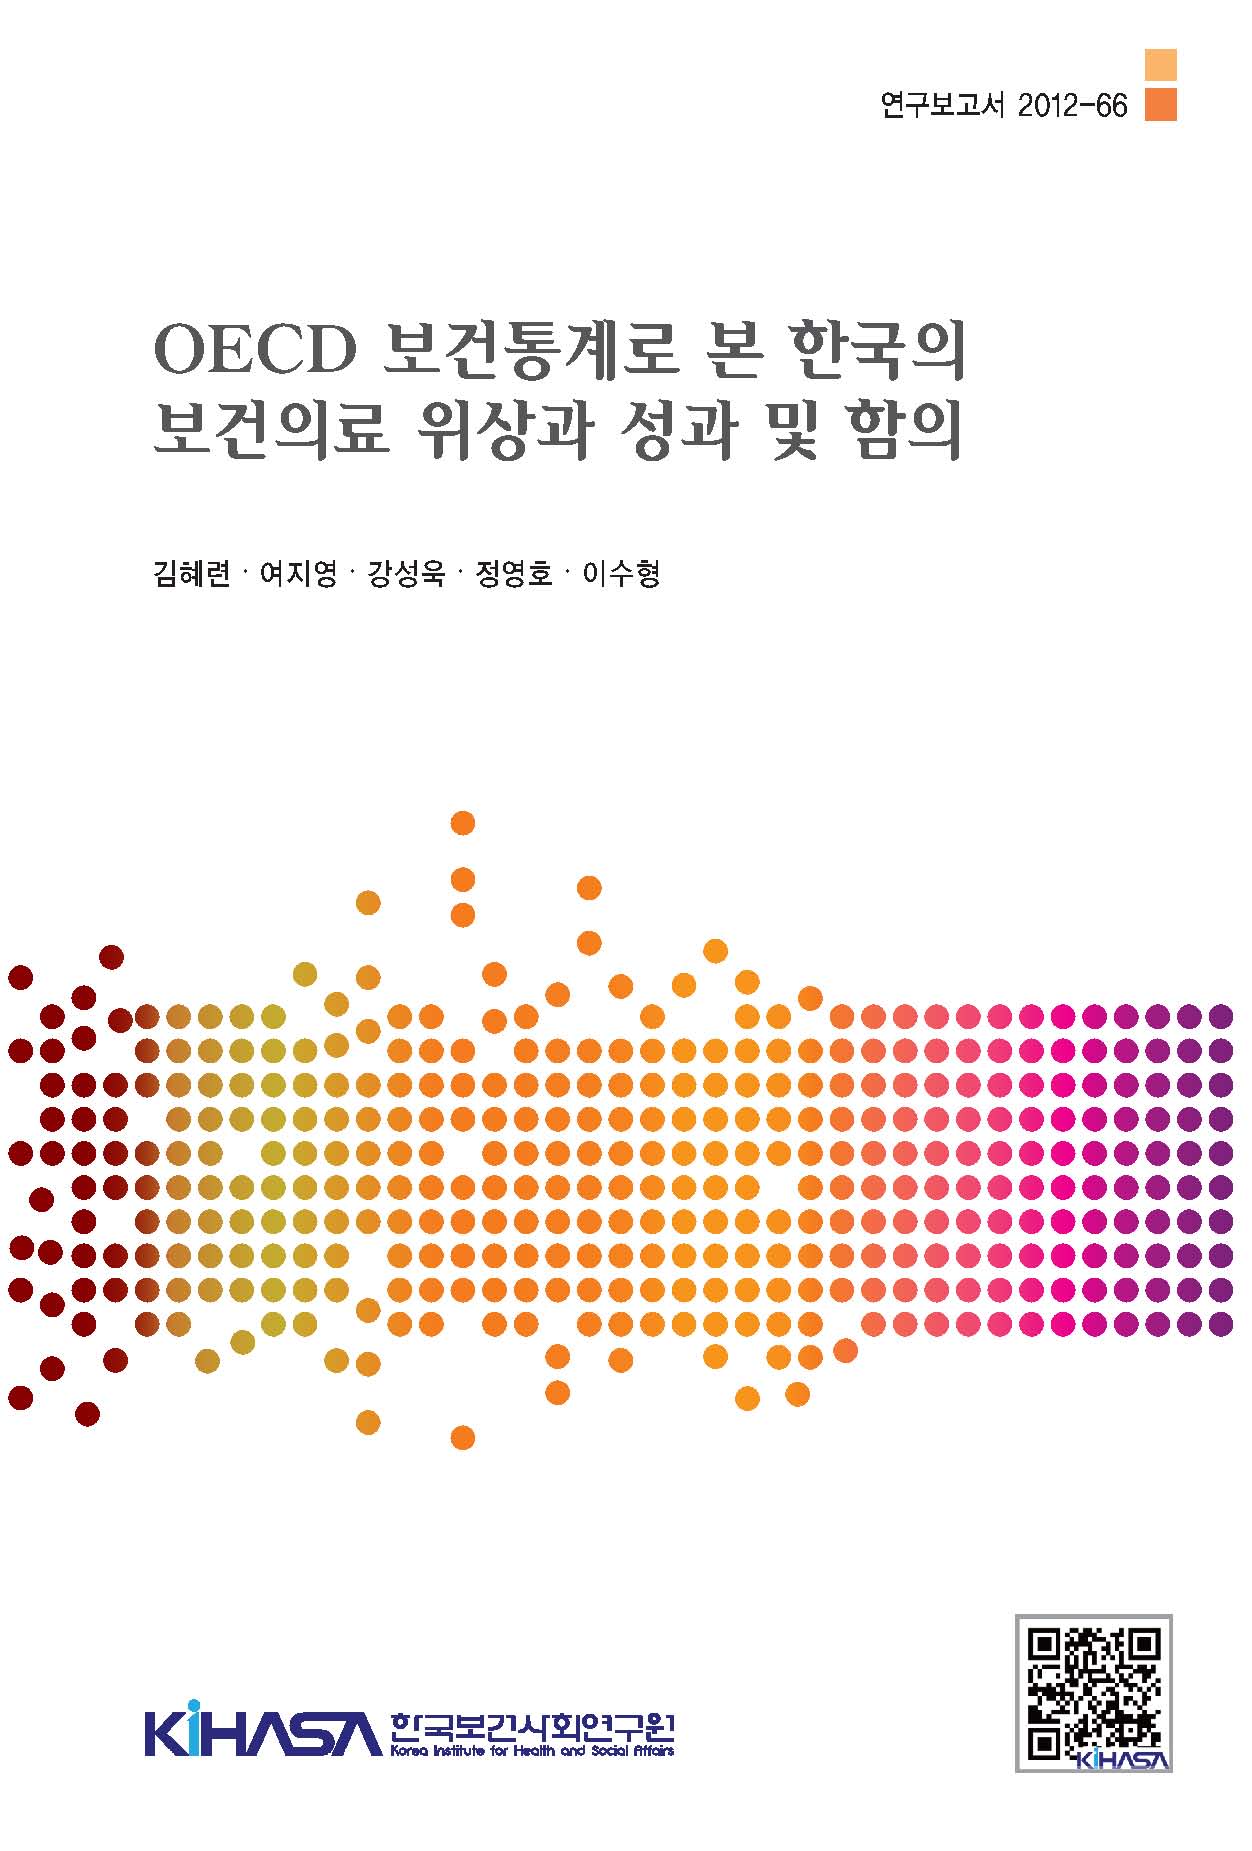 OECD 보건통계로 본 한국의 보건의료 위상과 성과 및 함의